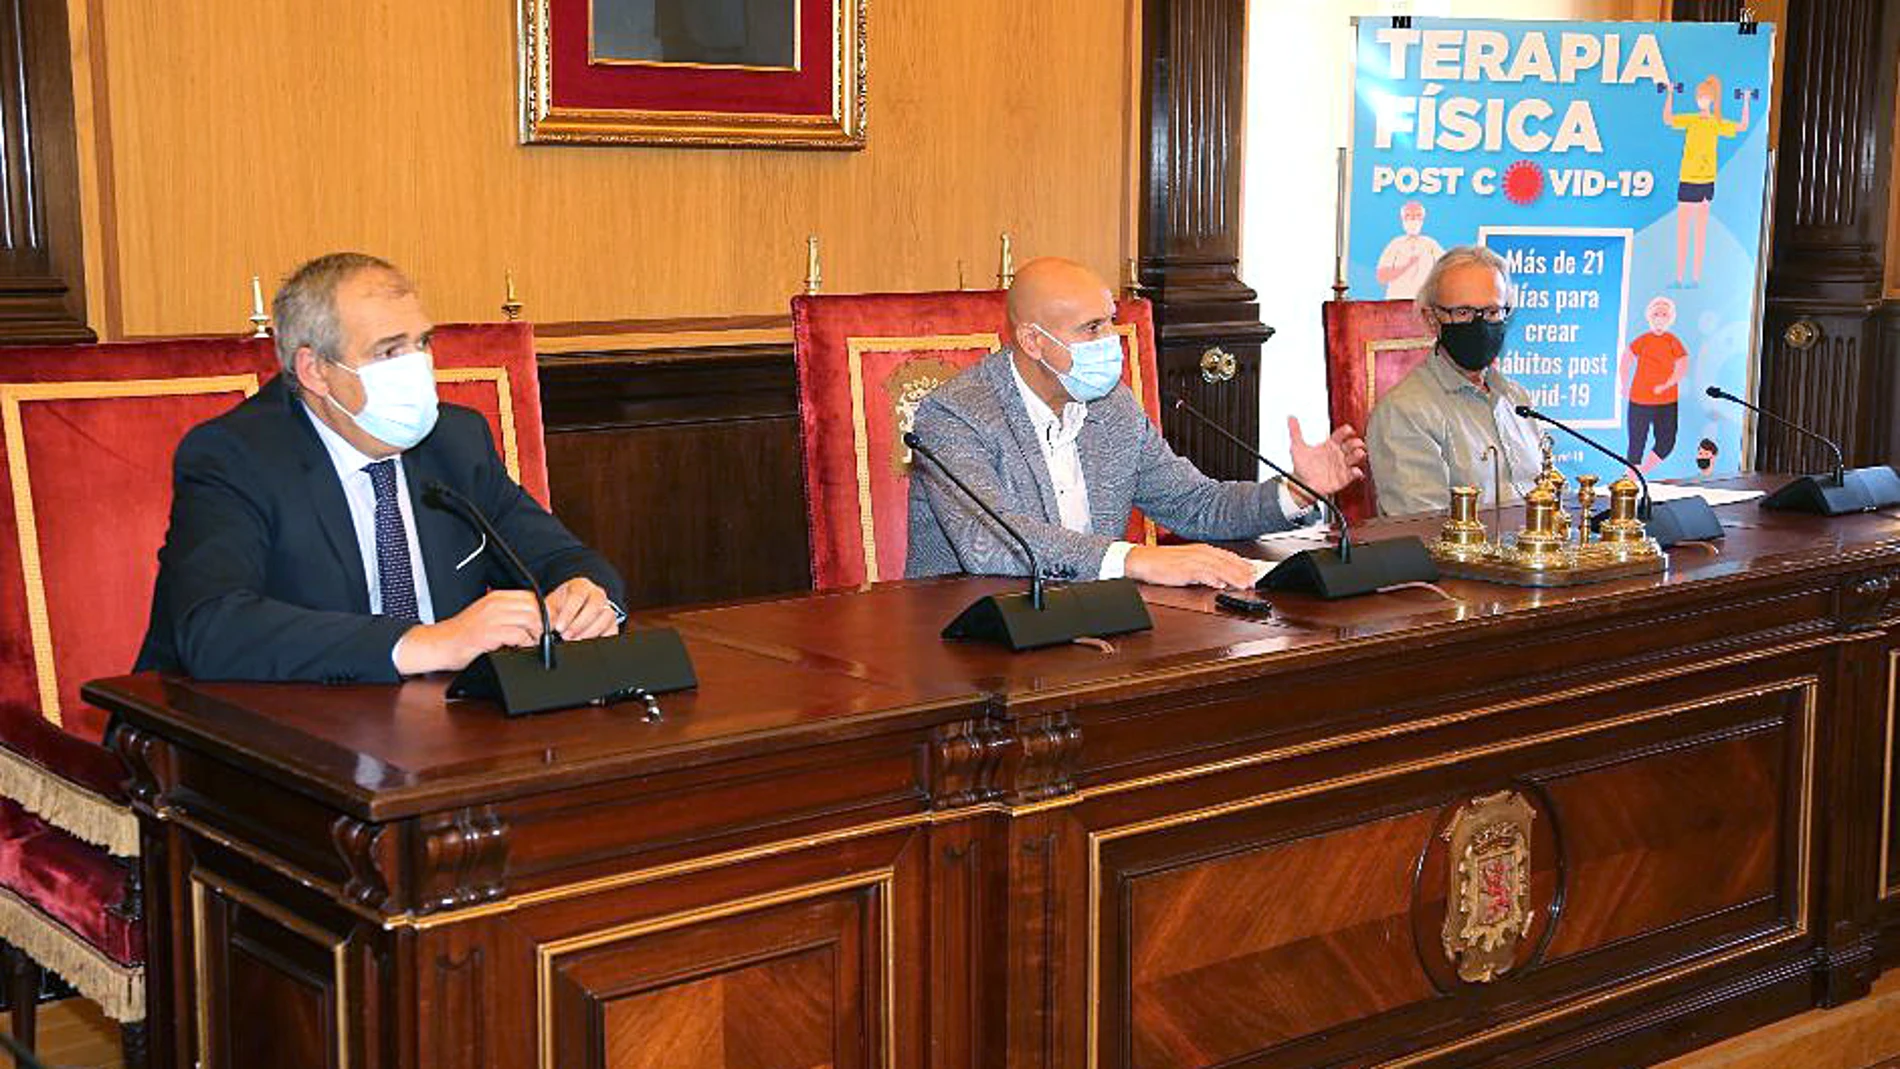 El alcalde de León, José Antonio Diez, presenta la iniciativa junto a Vicente Canuria y José Luis Conty